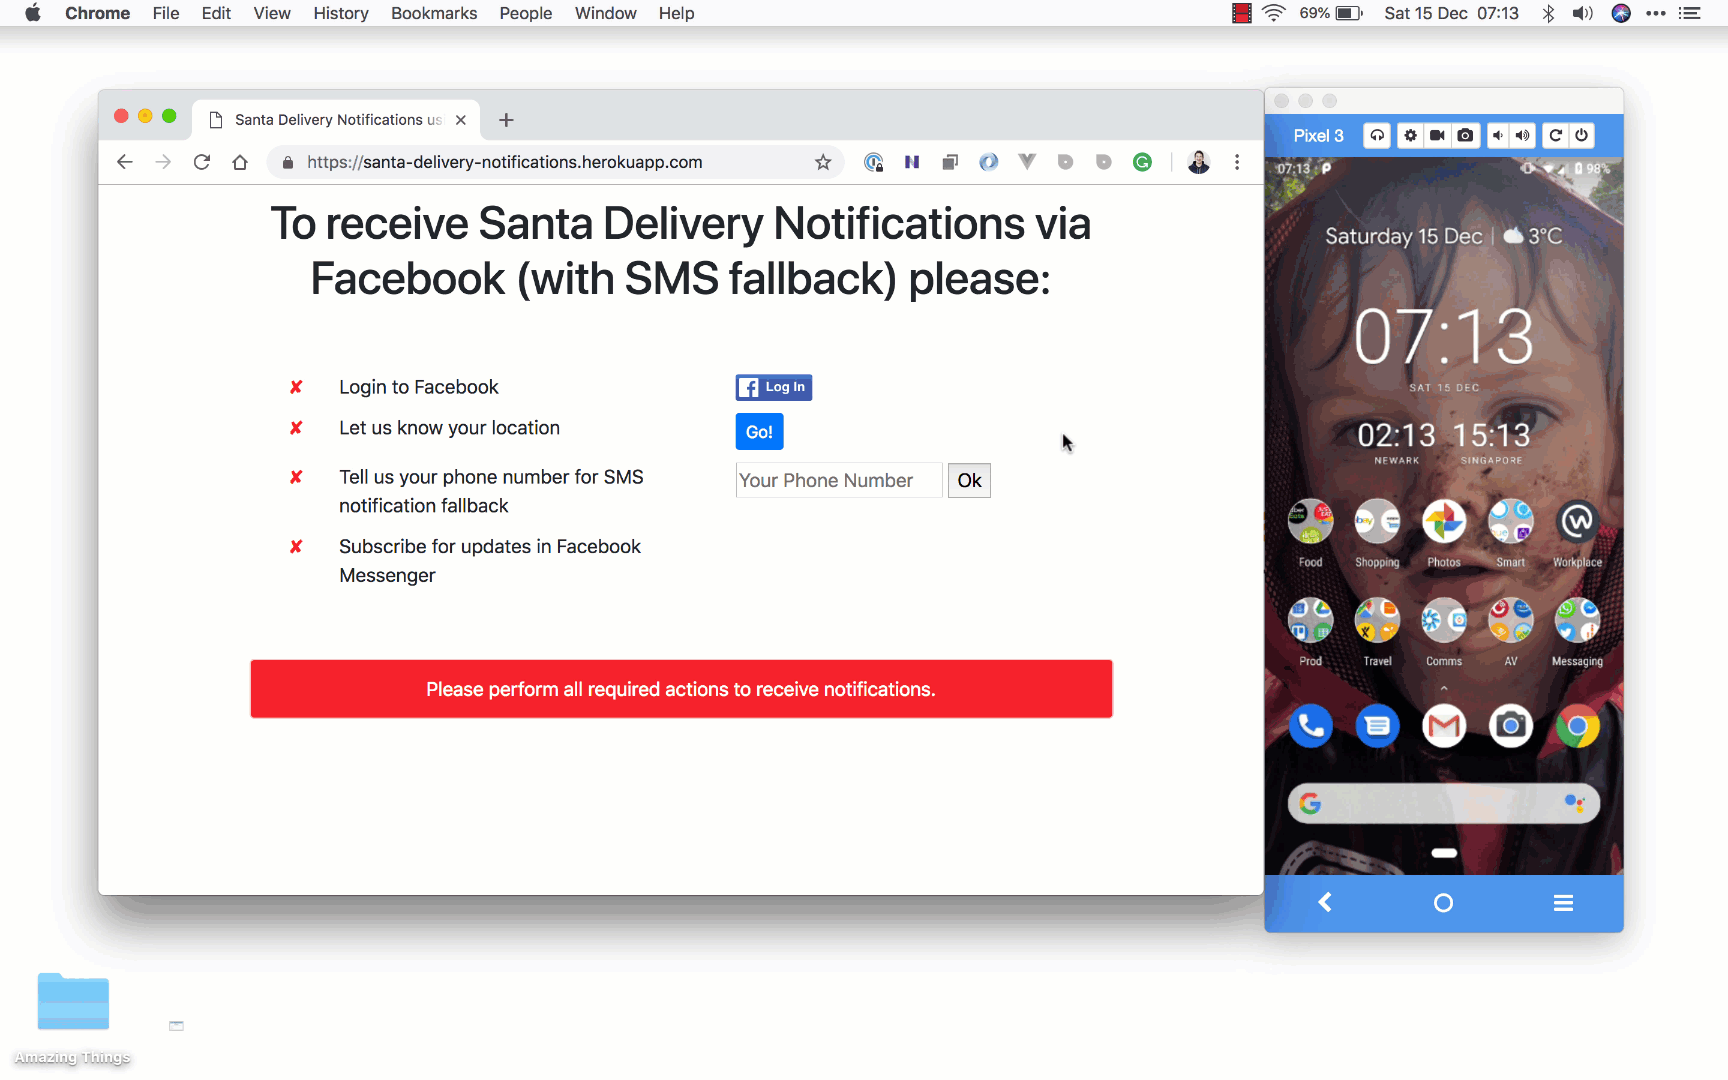 Santa Delivery Notifications UI